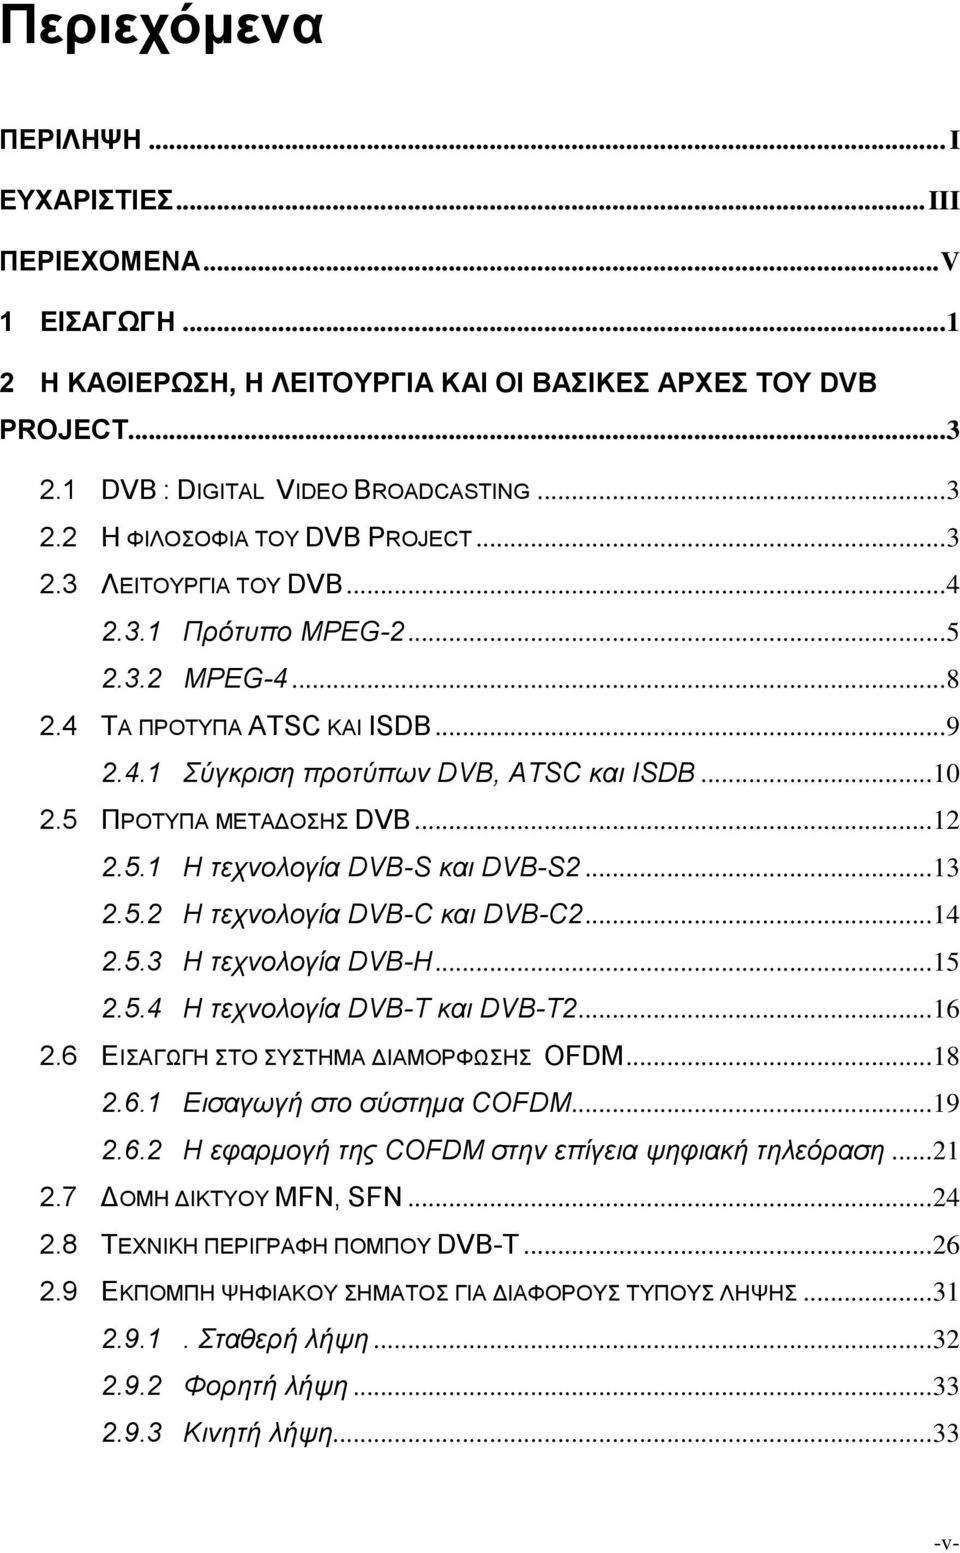 .. 13 2.5.2 Η τεχνολογία DVB-C και DVB-C2... 14 2.5.3 Η τεχνολογία DVB-H... 15 2.5.4 Η τεχνολογία DVB-T και DVB-T2... 16 2.6 ΕΙΣΑΓΩΓΗ ΣΤΟ ΣΥΣΤΗΜΑ ΔΙΑΜΟΡΦΩΣΗΣ OFDM... 18 2.6.1 Εισαγωγή στο σύστημα COFDM.